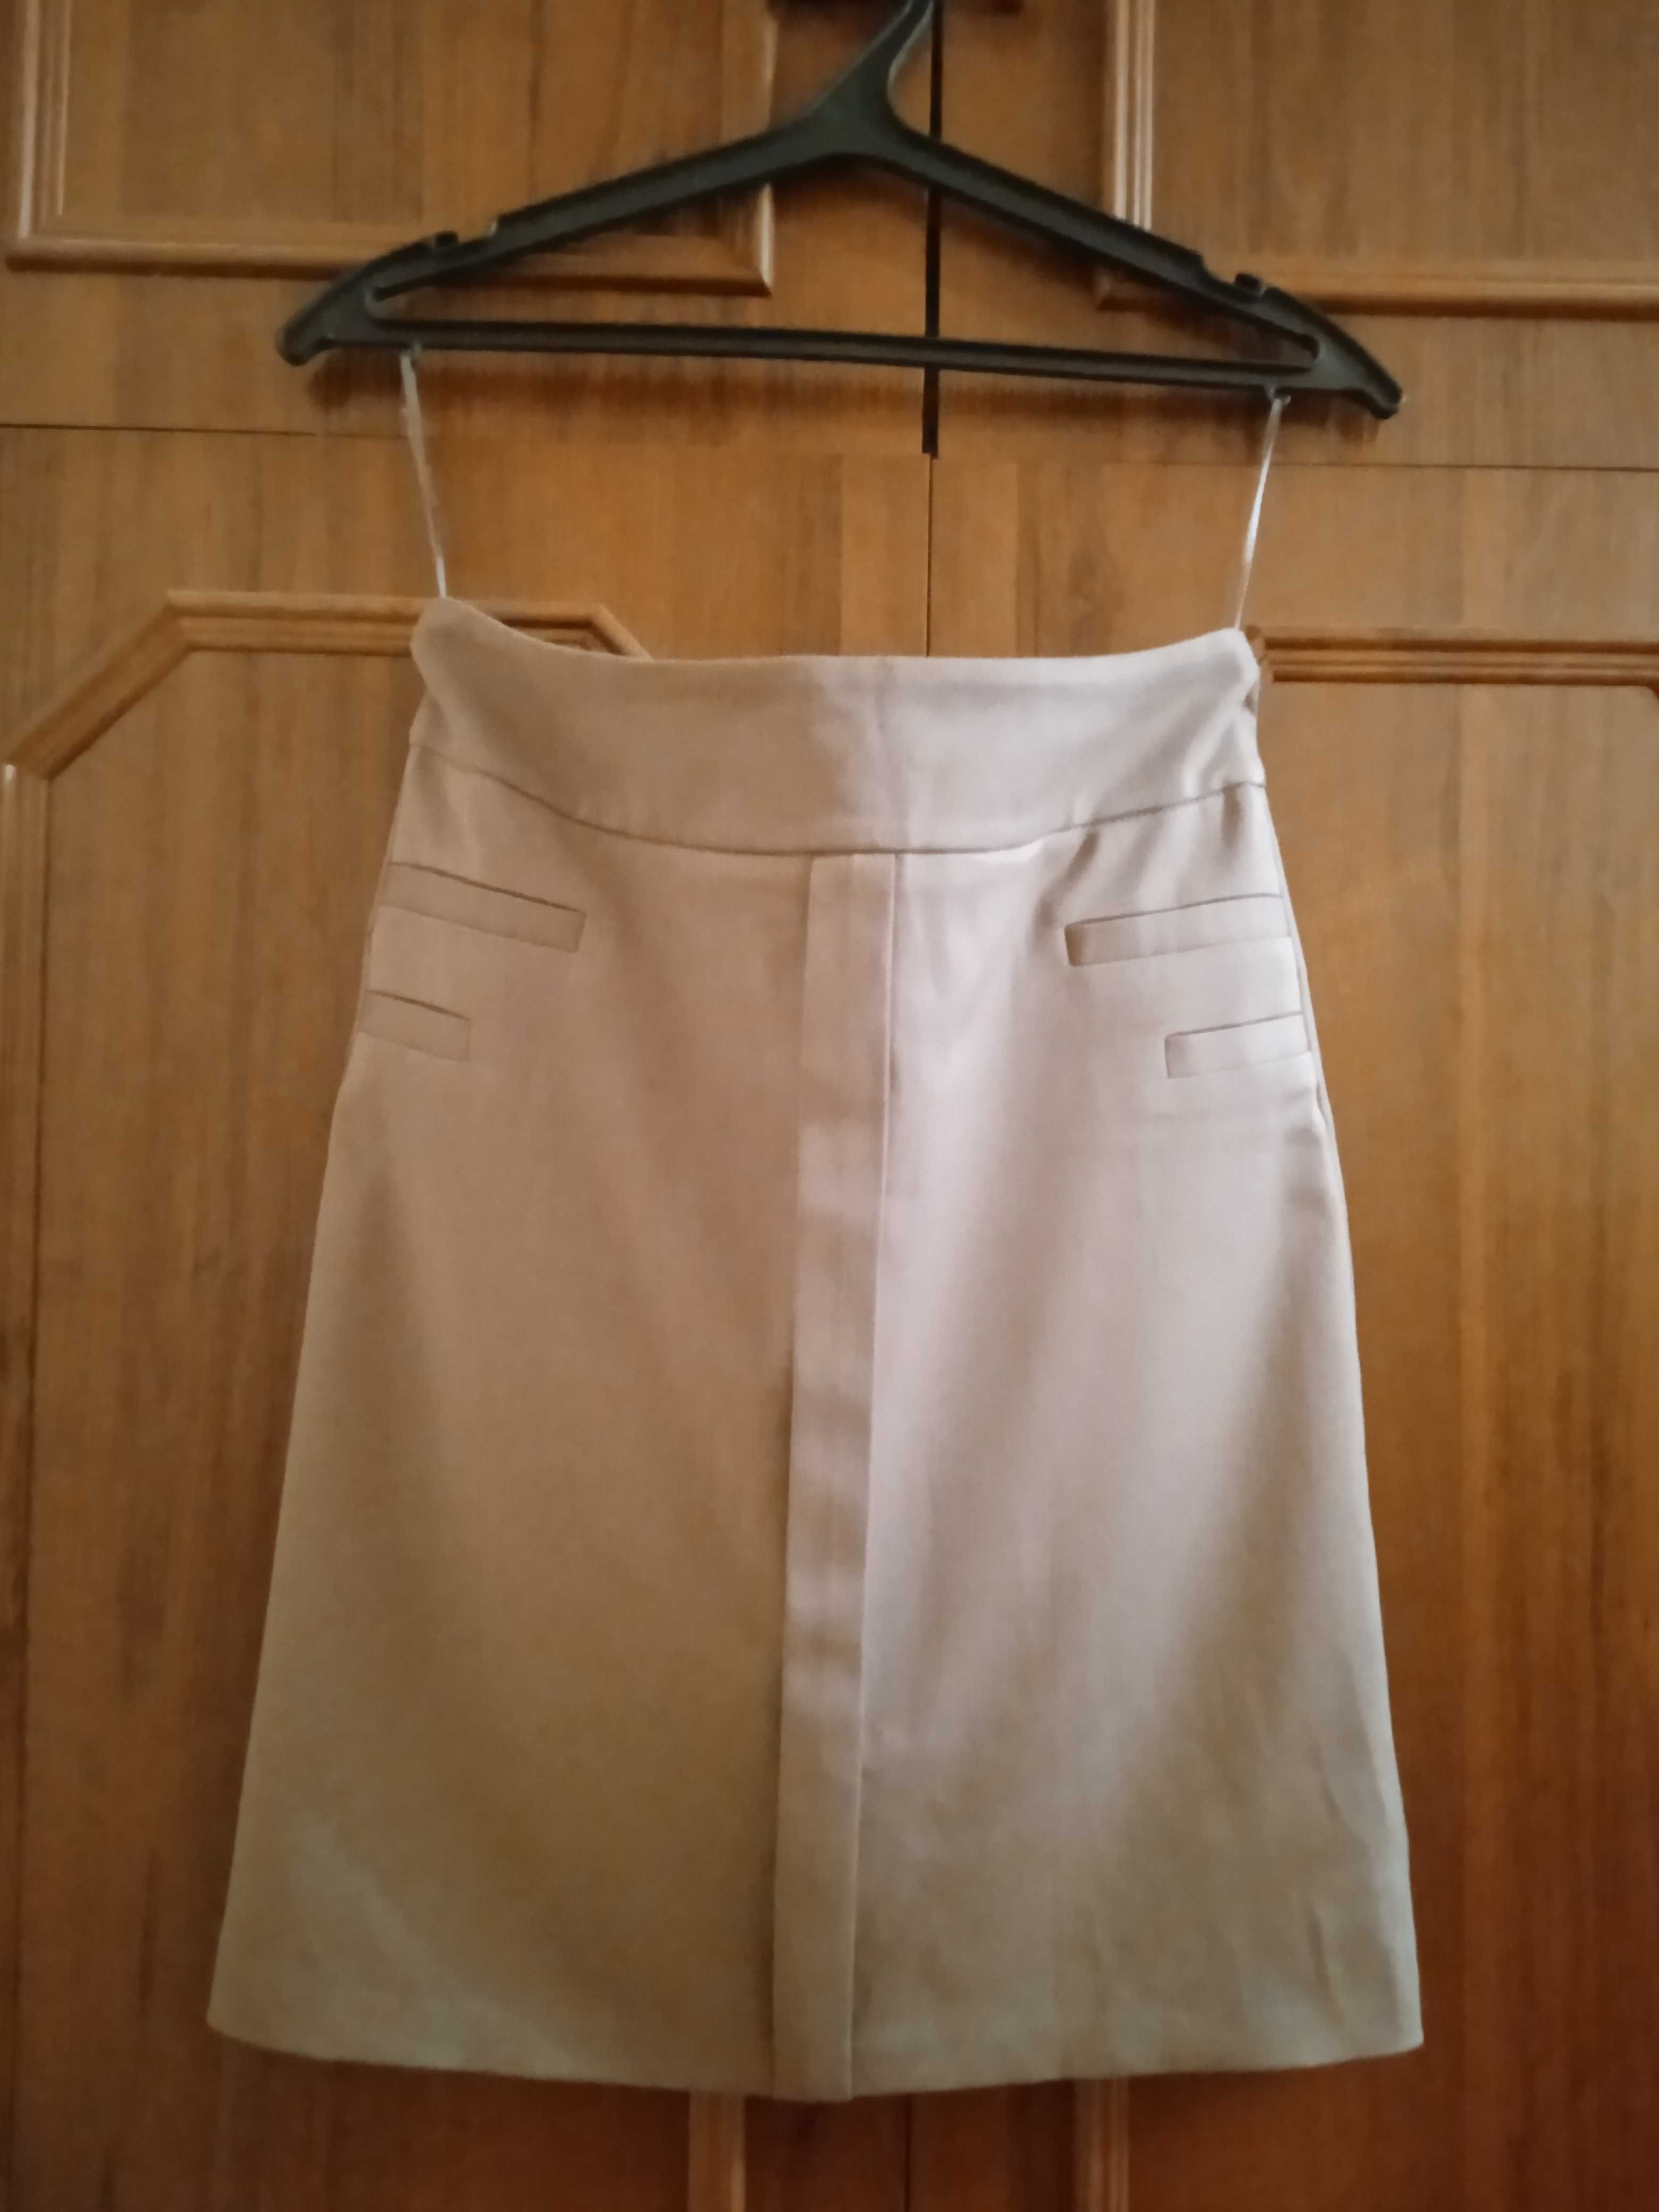 Классическая юбка-карандаш для школьницы.